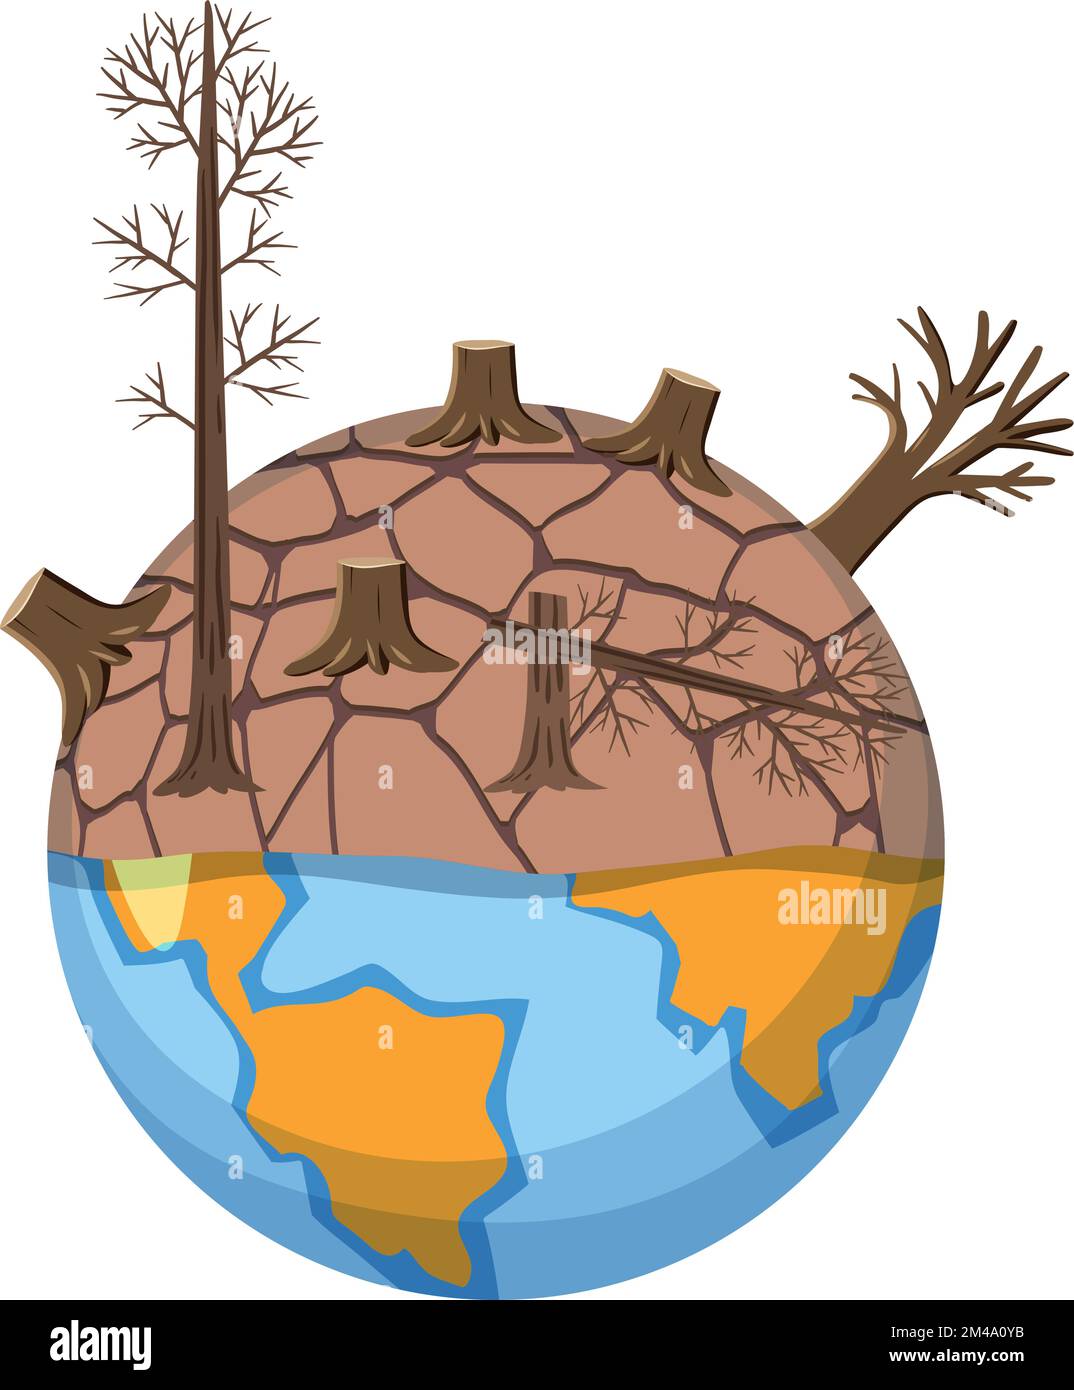 La siccità ha colpito la zona sul globo dall'illustrazione di riscaldamento globale Illustrazione Vettoriale